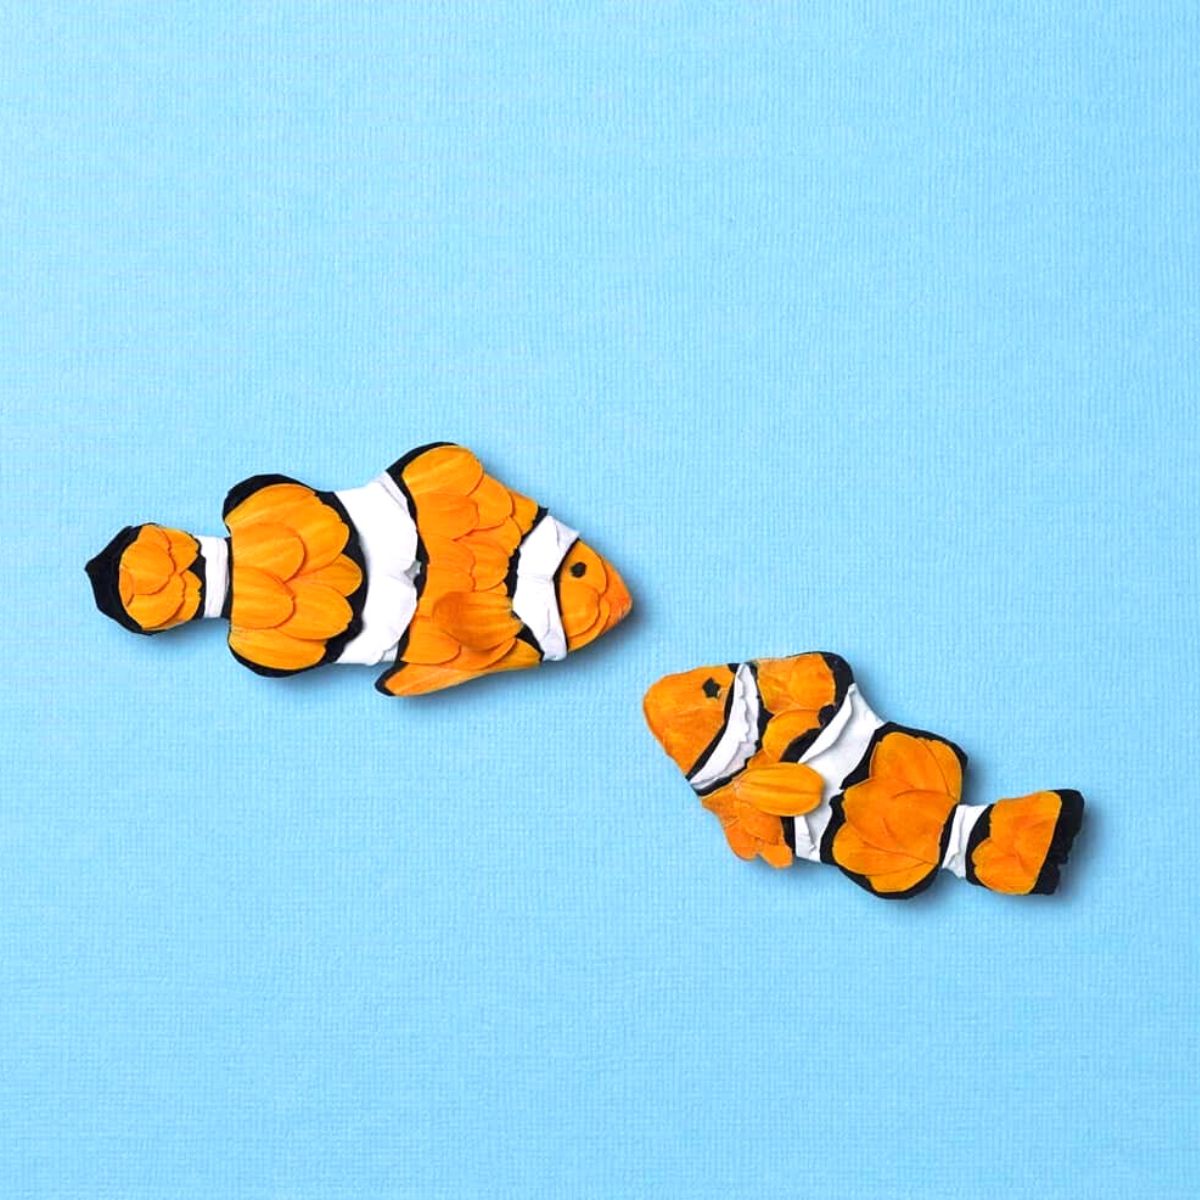 Colorful fish by Raku Inoue